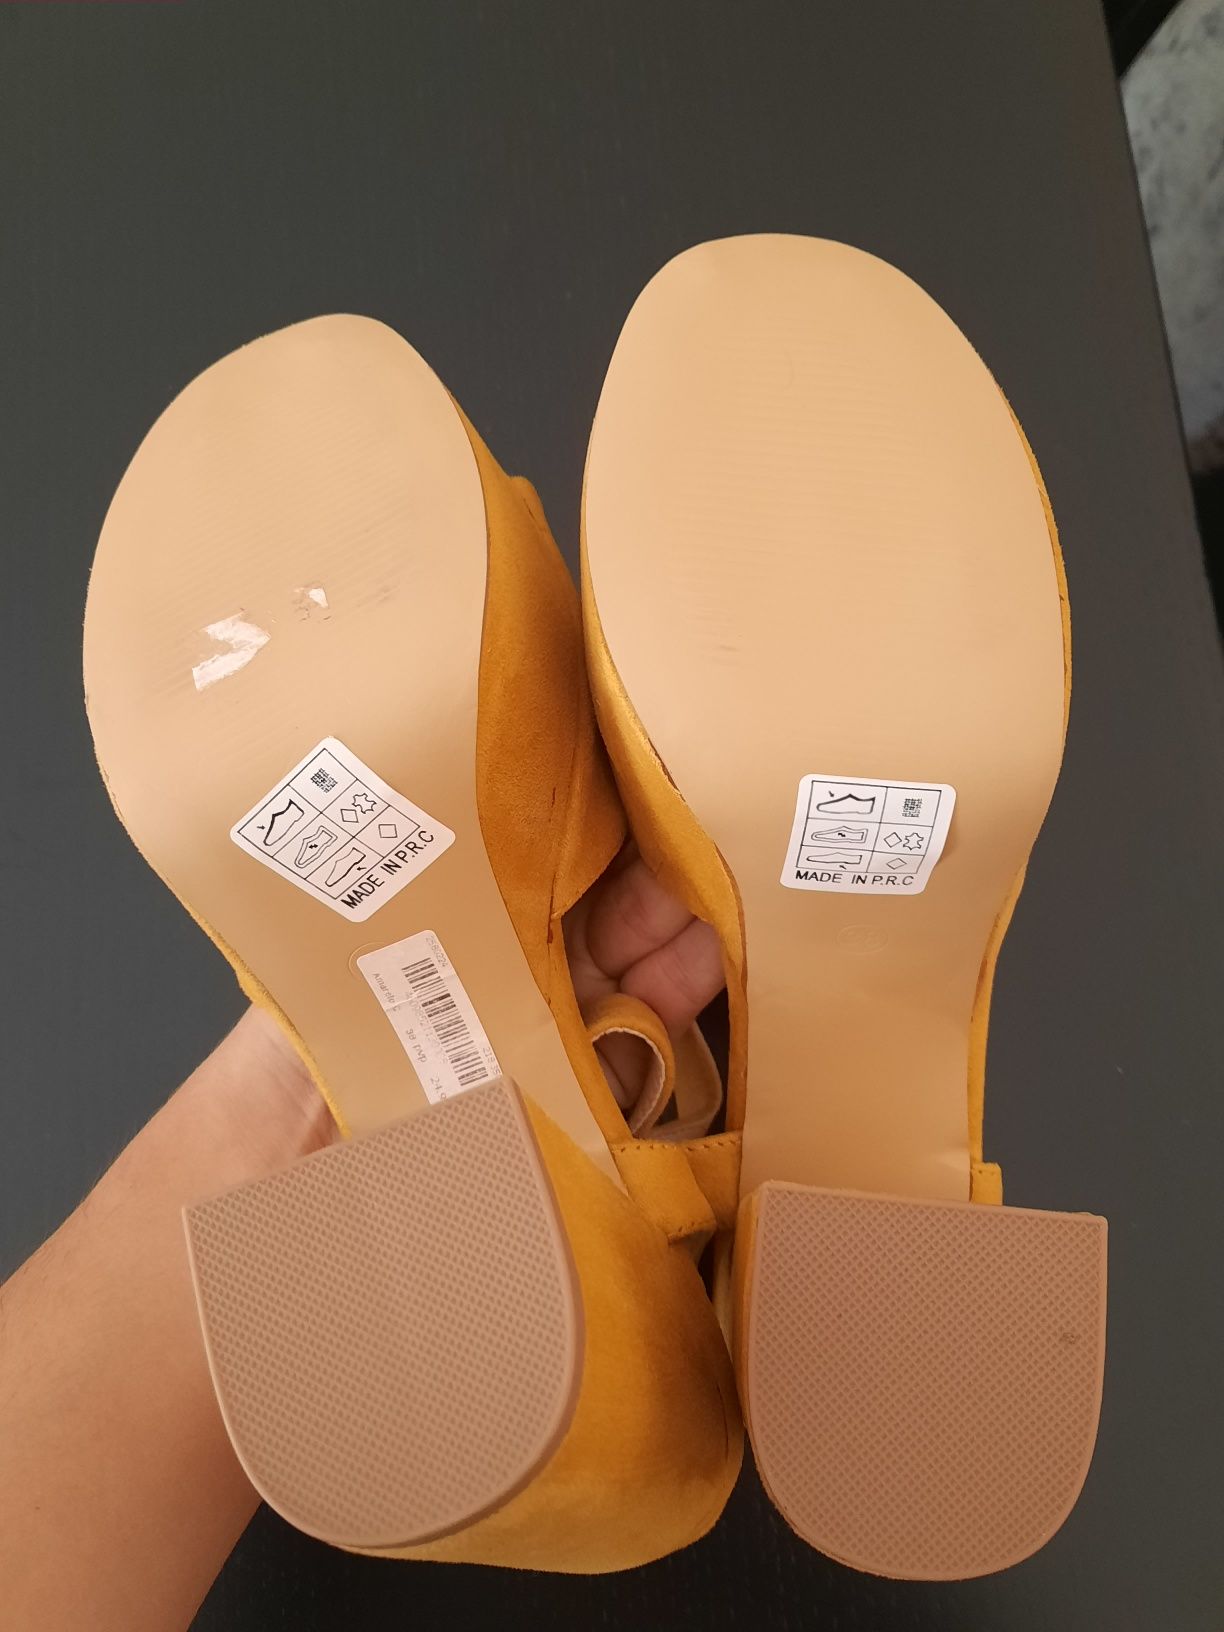 Sandálias amarelas novas